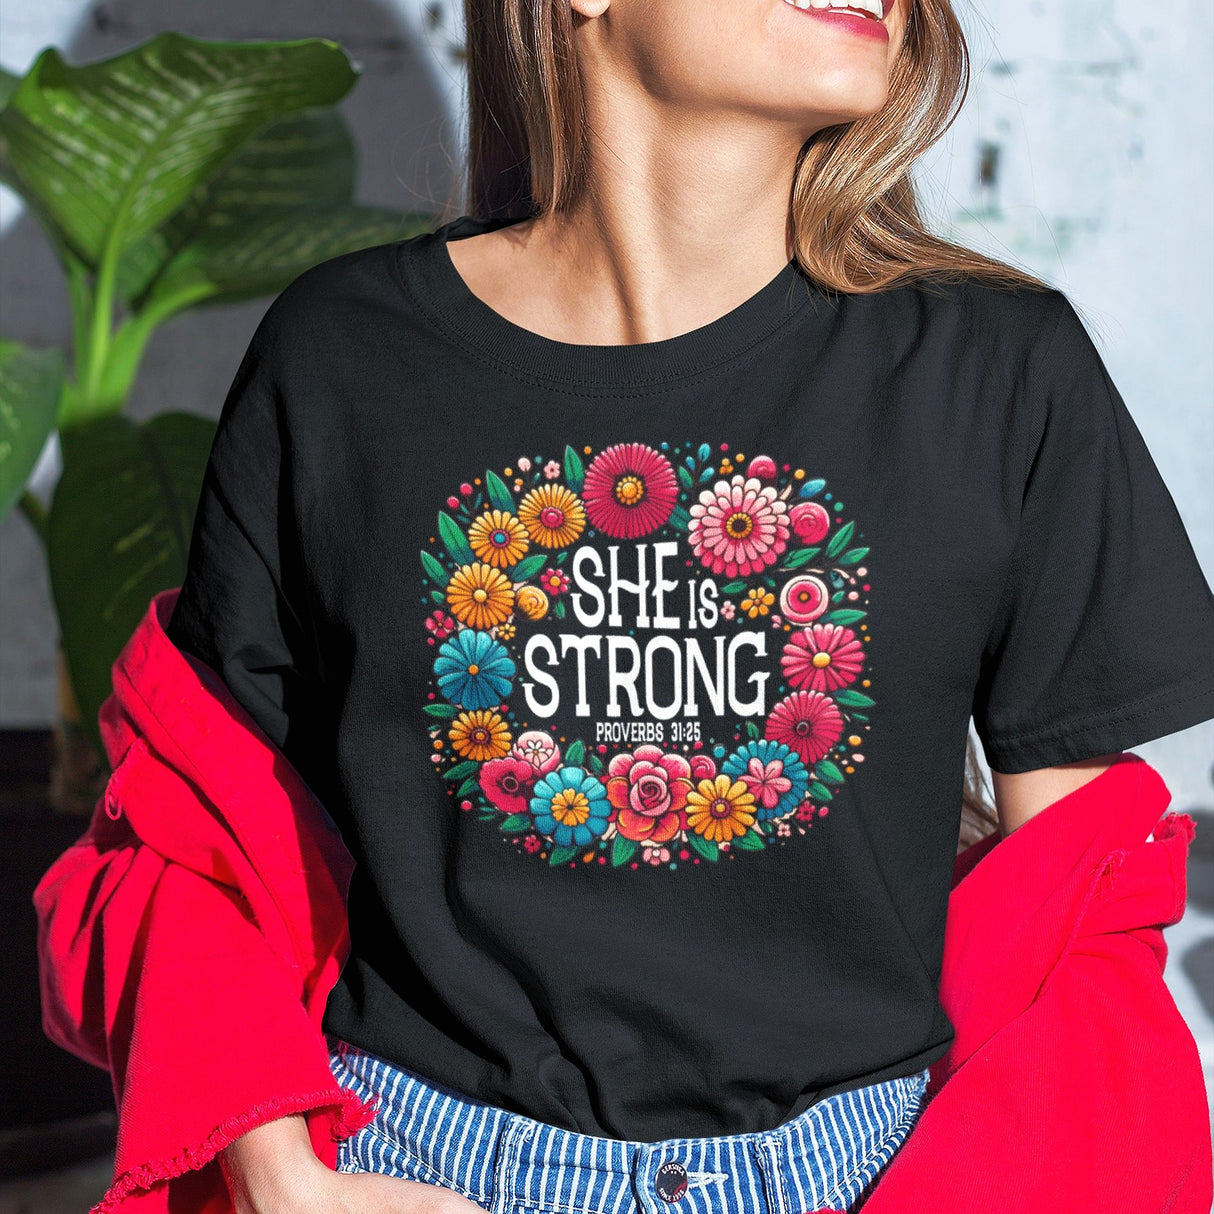 she-is-strong-proverbs-31-25-flowers-wreath-faith-tee-faith-t-shirt-strength-tee-women-t-shirt-proverbs-31-tee#color_black